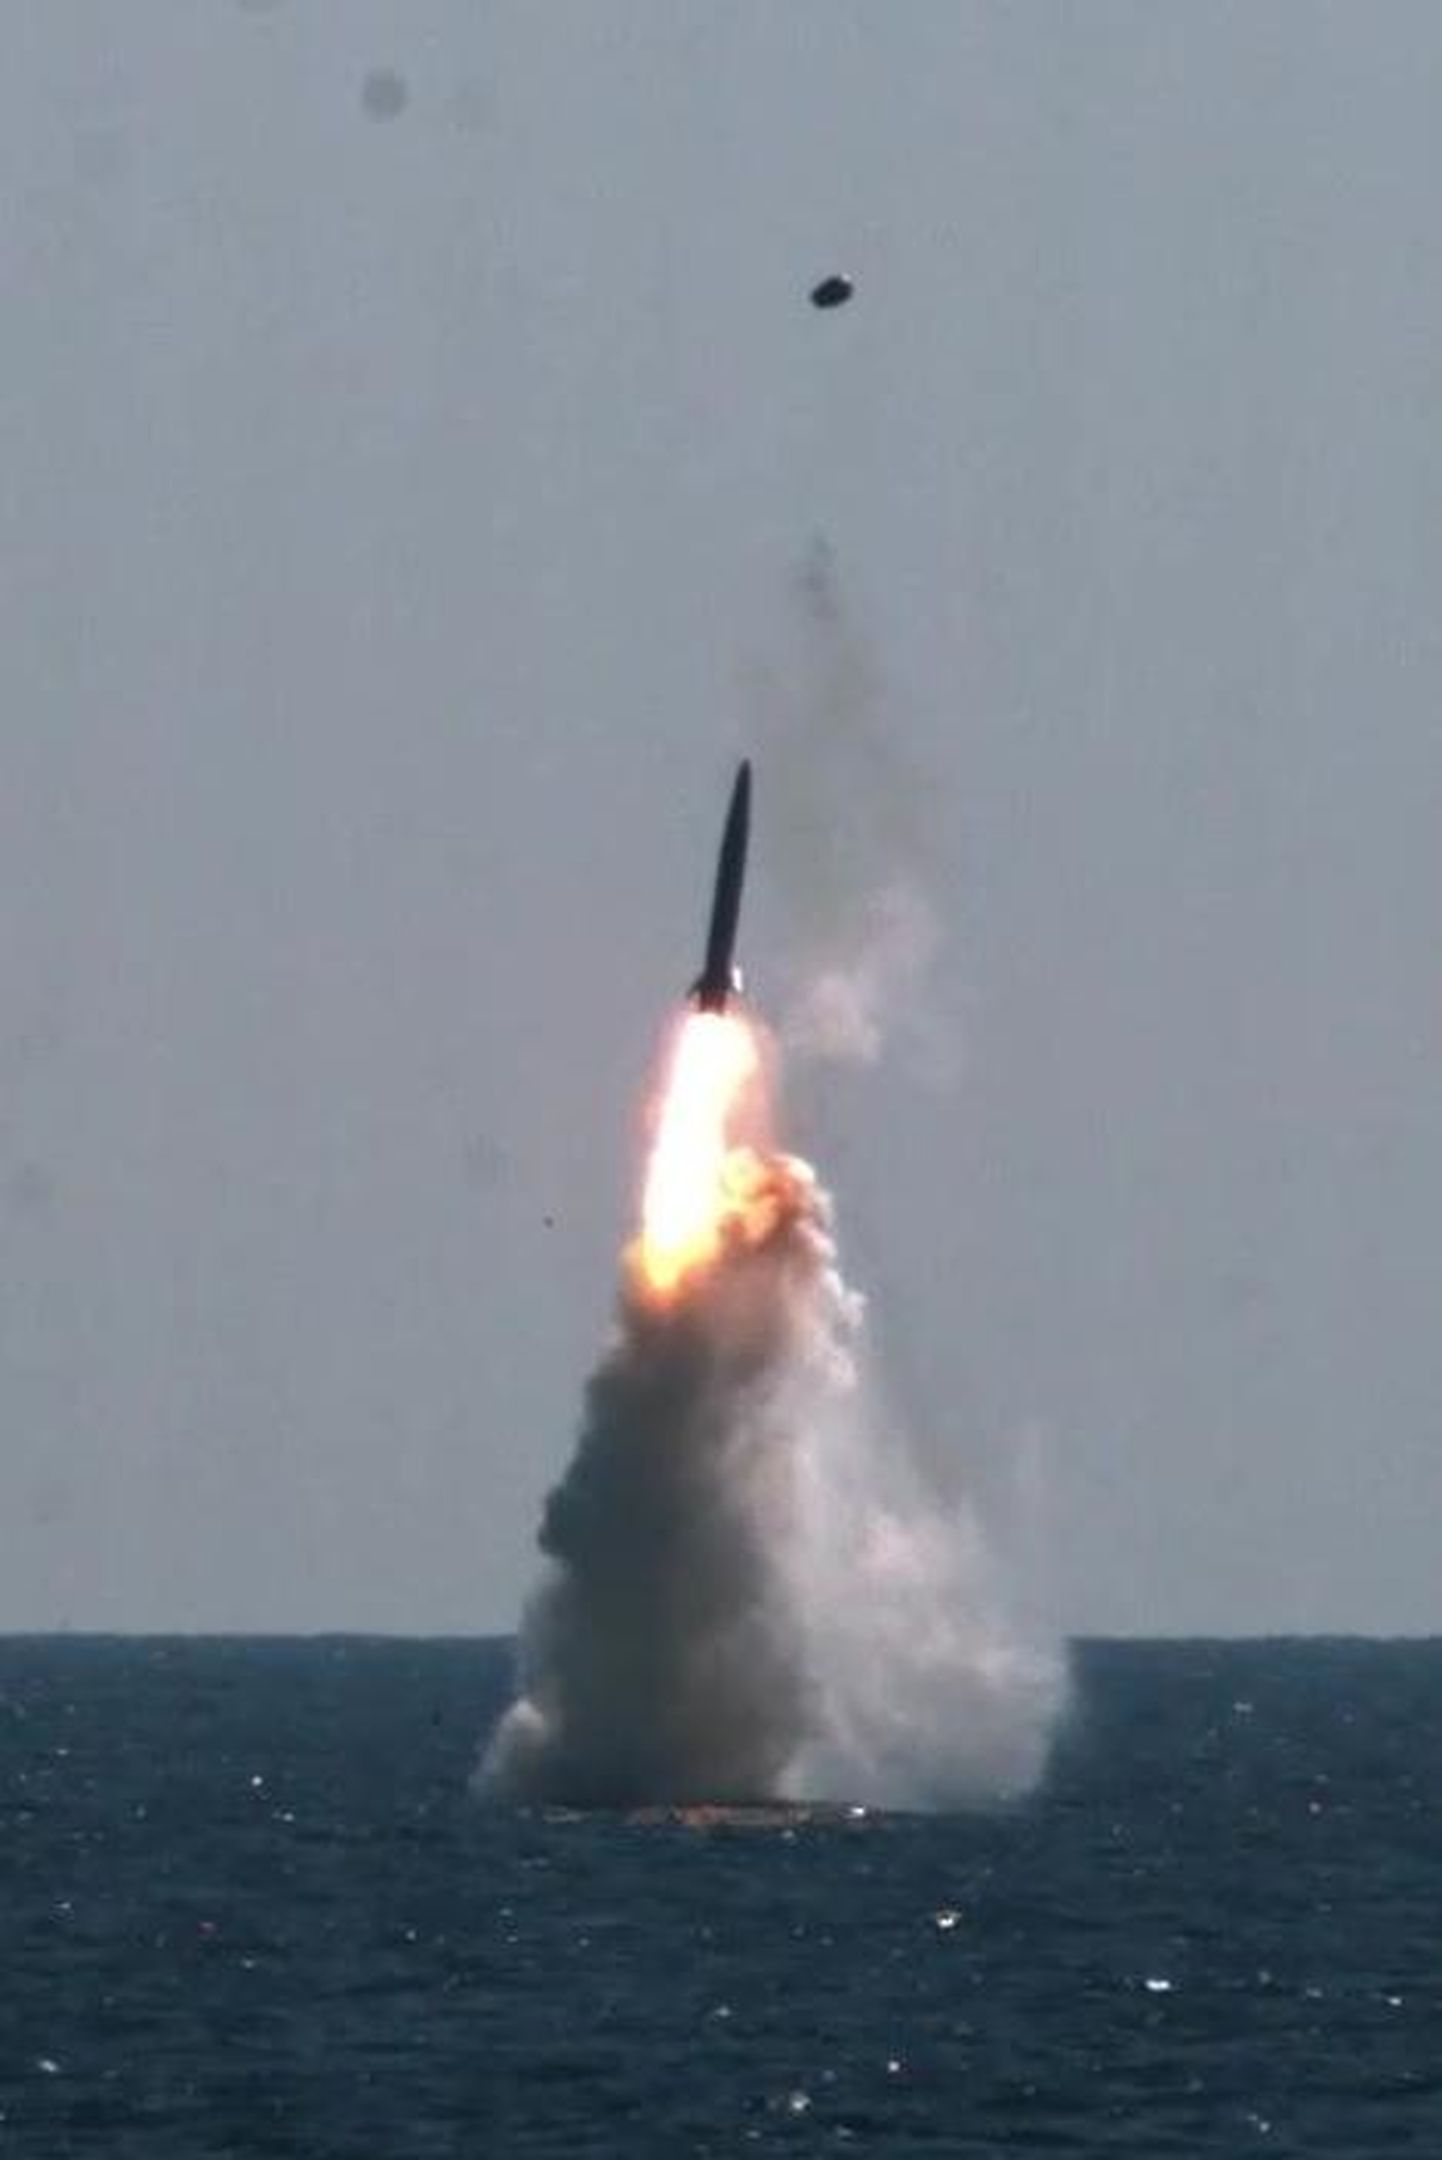 Põhja-Korea katsetas uut tüüpi tiibraketti ning kolmapäeval tulistati riigi poolt välja ka kaks ballistilist raketti.